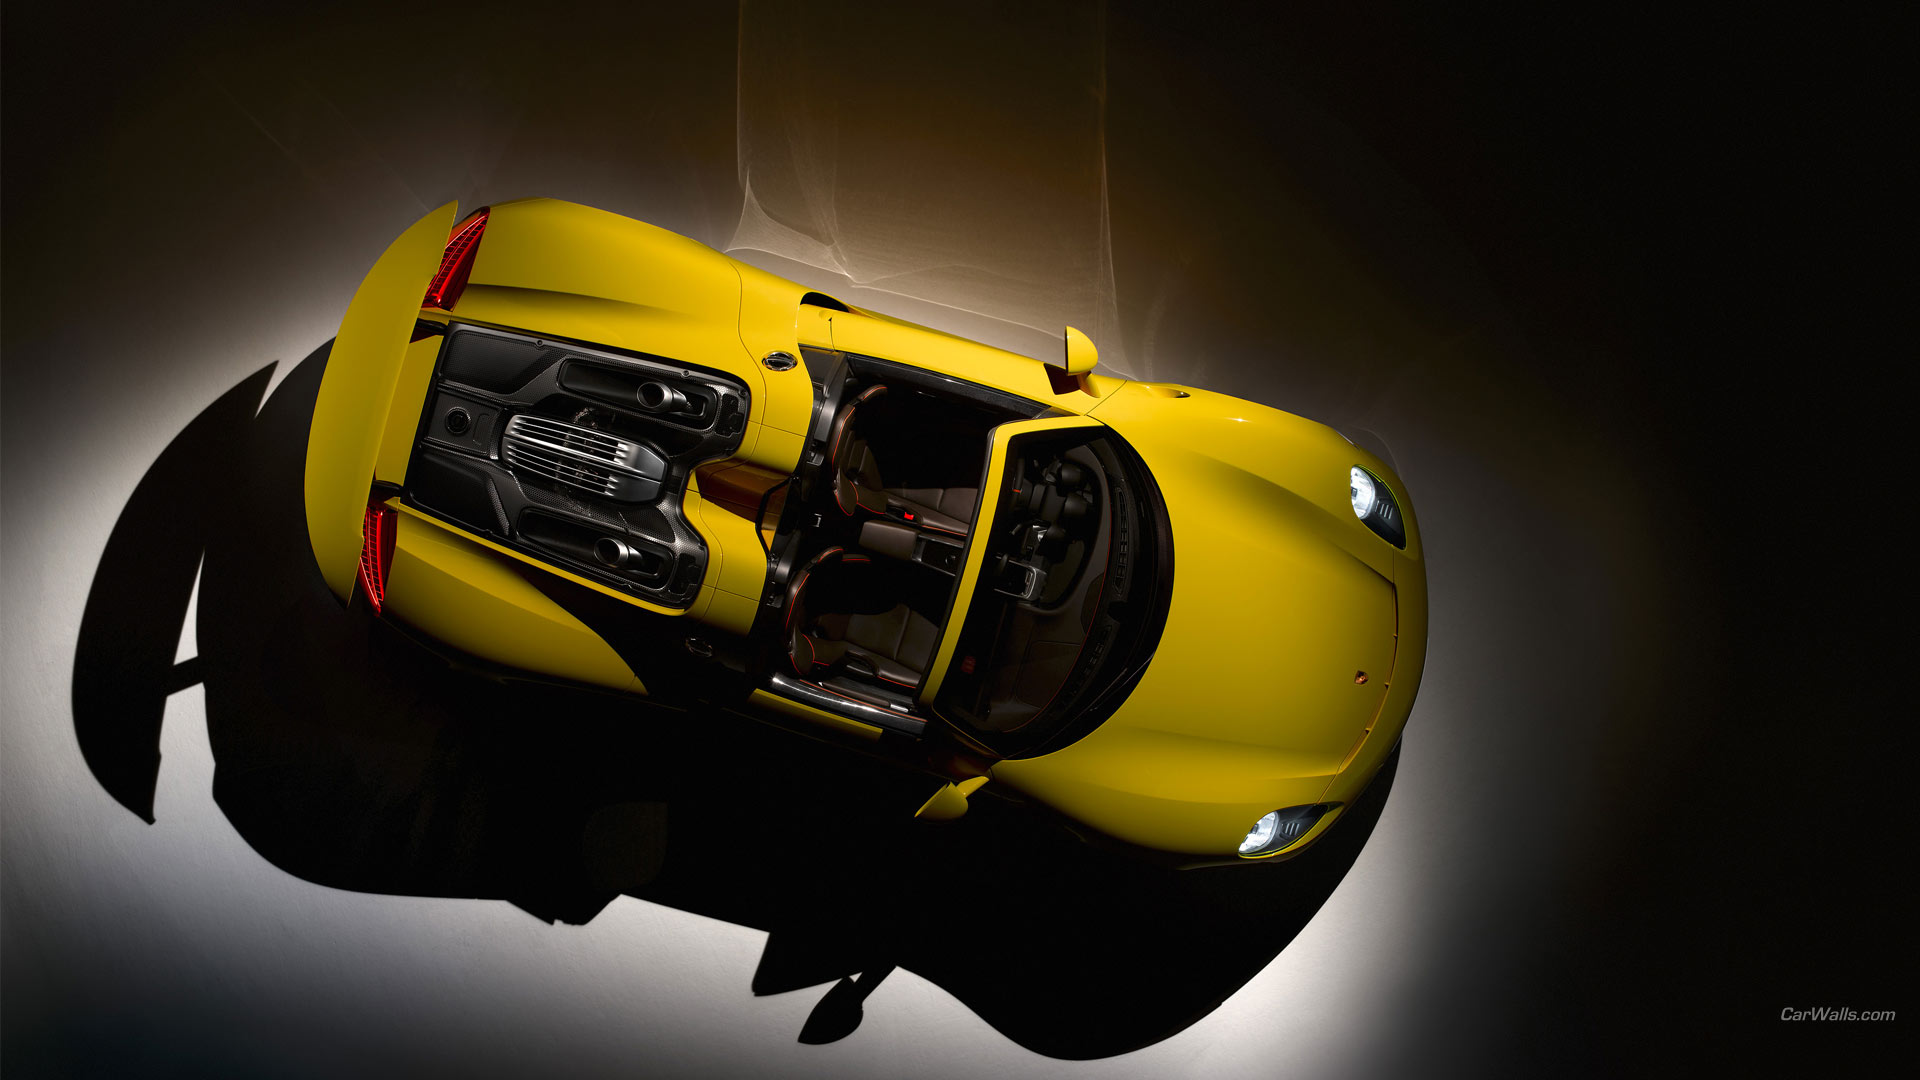 Descarga gratuita de fondo de pantalla para móvil de Porsche 918 Spyder, Porsche, Vehículos.